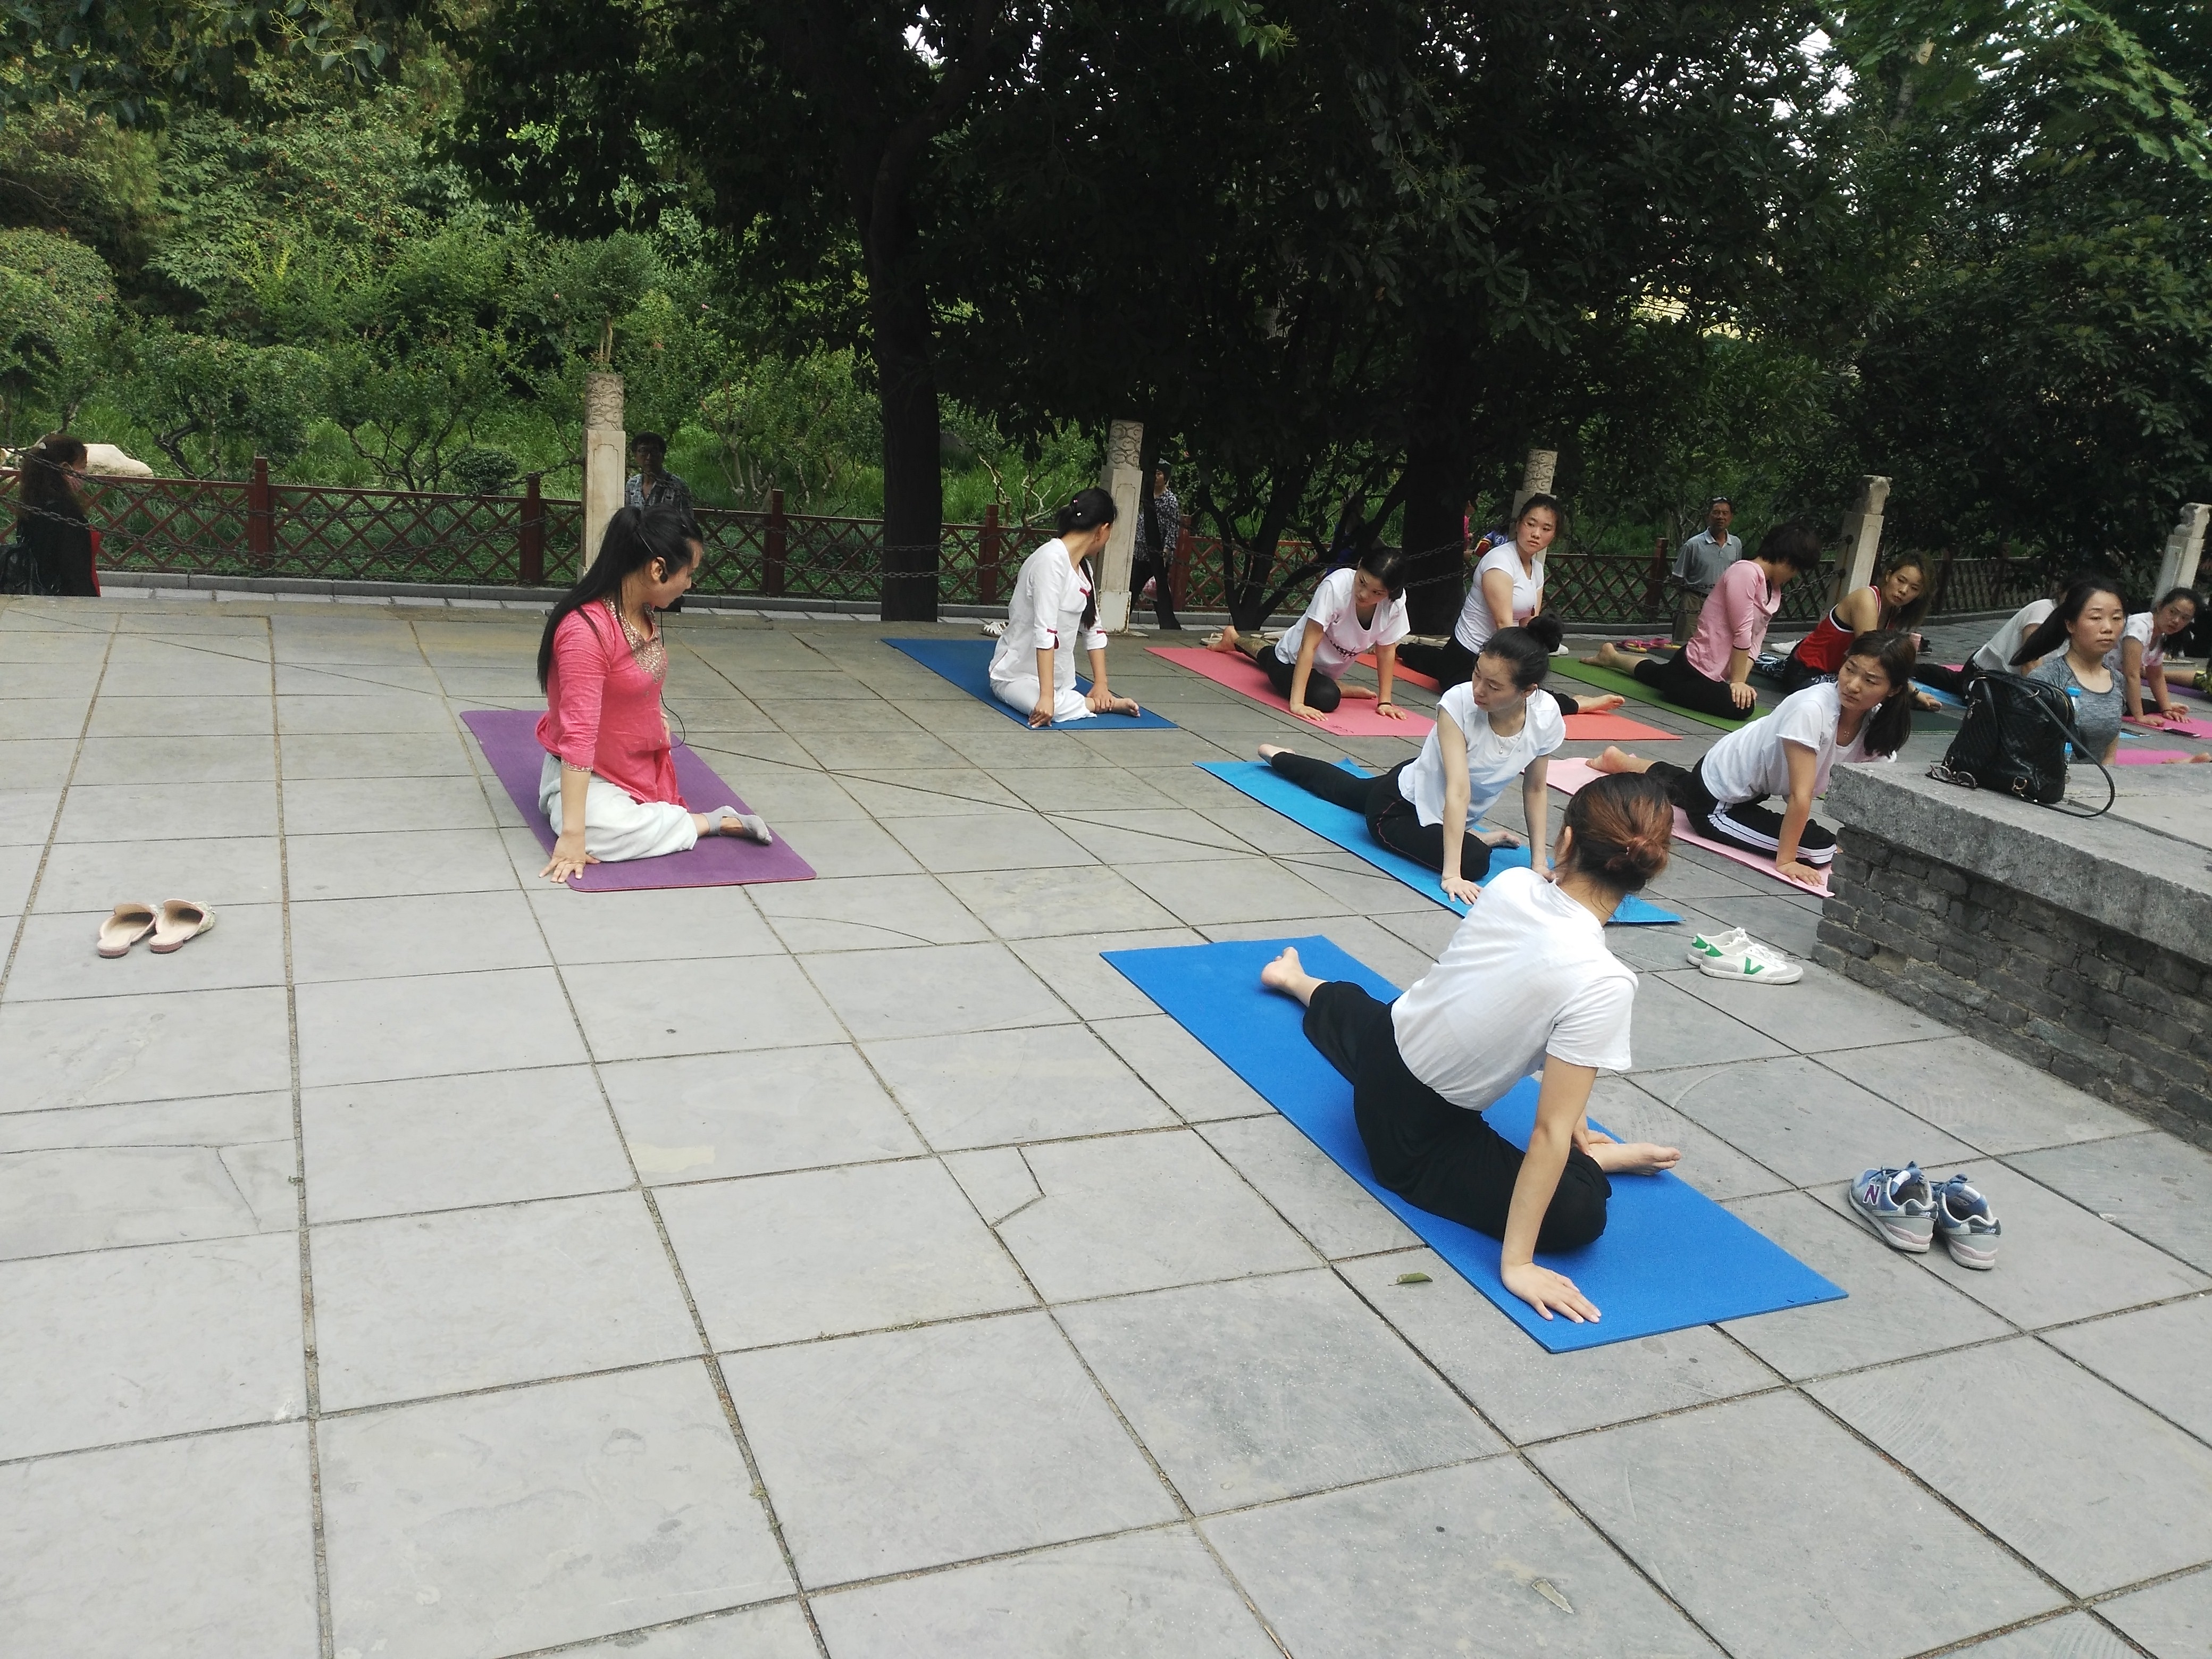 清晨，郑州某公园一群瑜伽爱好者集体秀一字马